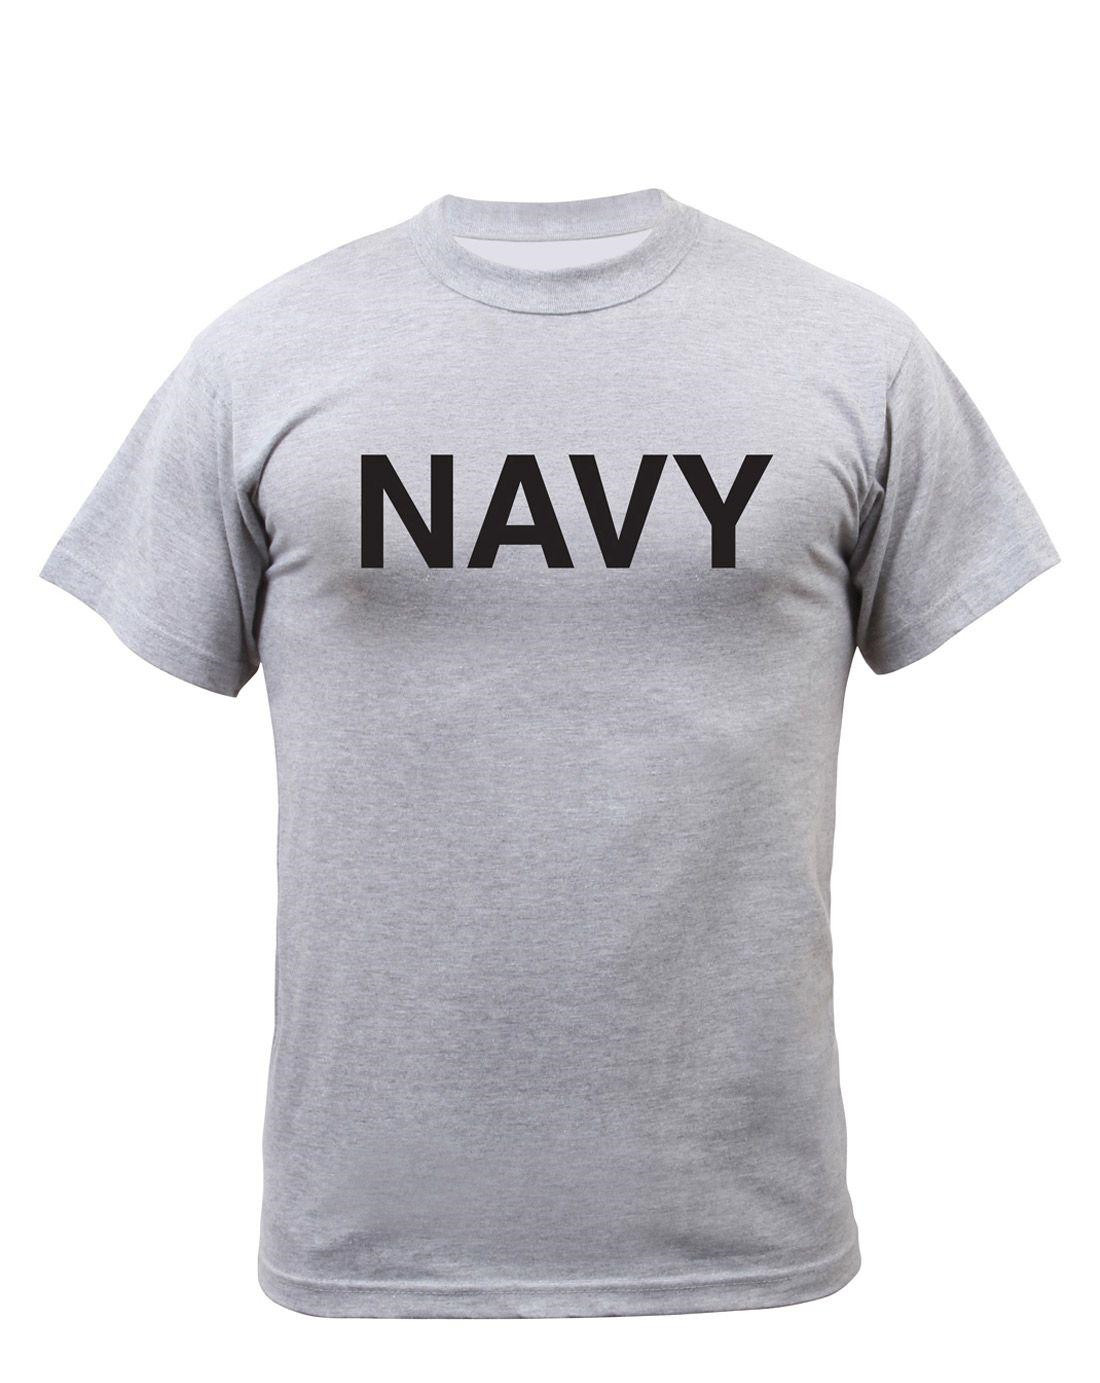 Rothco Physical Training T-shirt - 'ARMY' (Grå m. NAVY, 2XL)